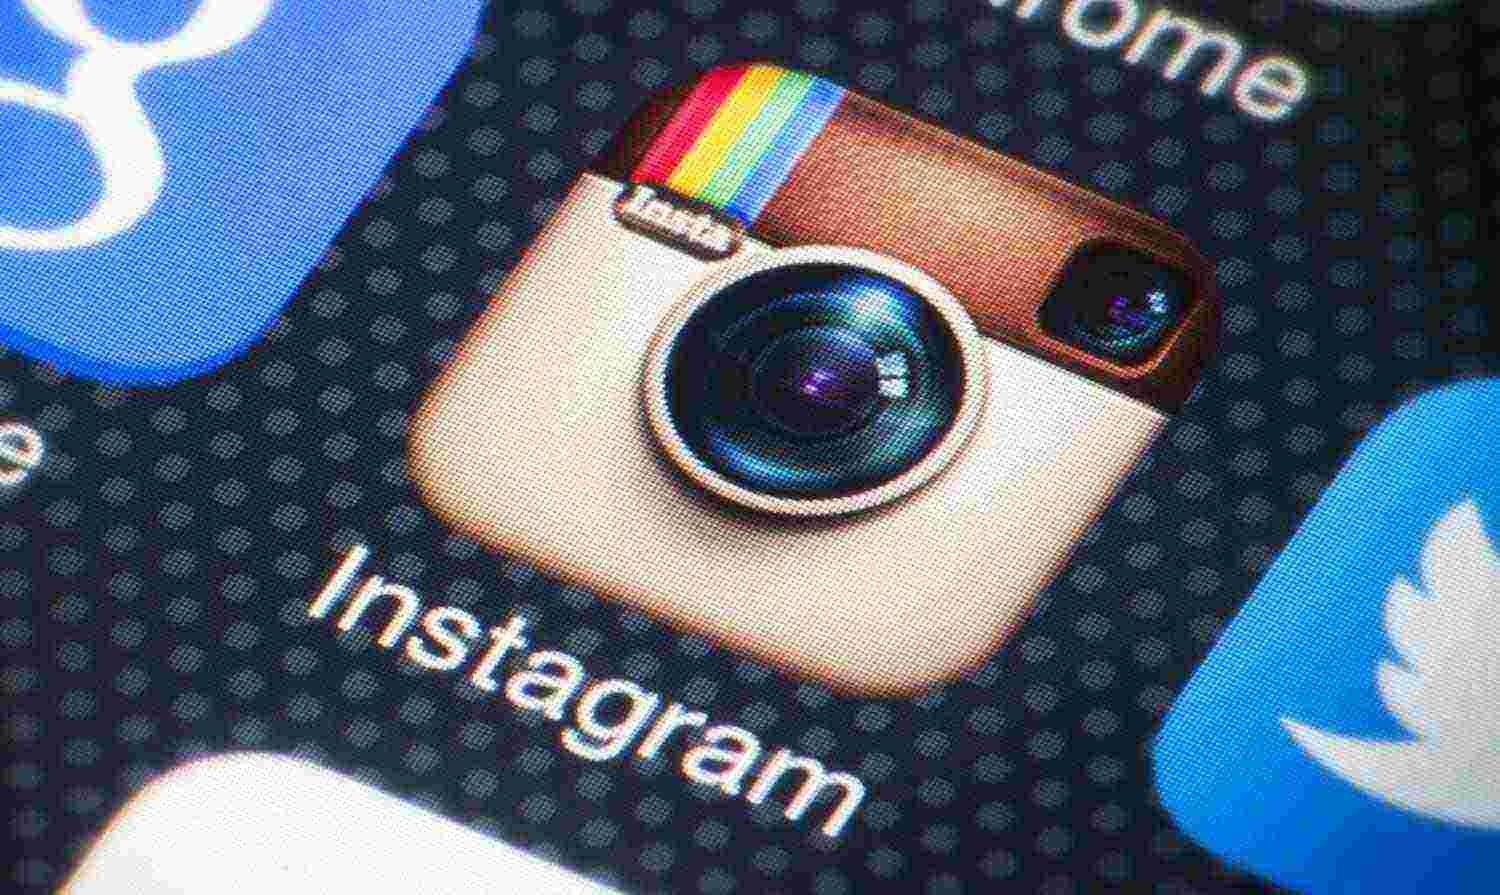 Снимки в Instagram теперь будут больше и лучше